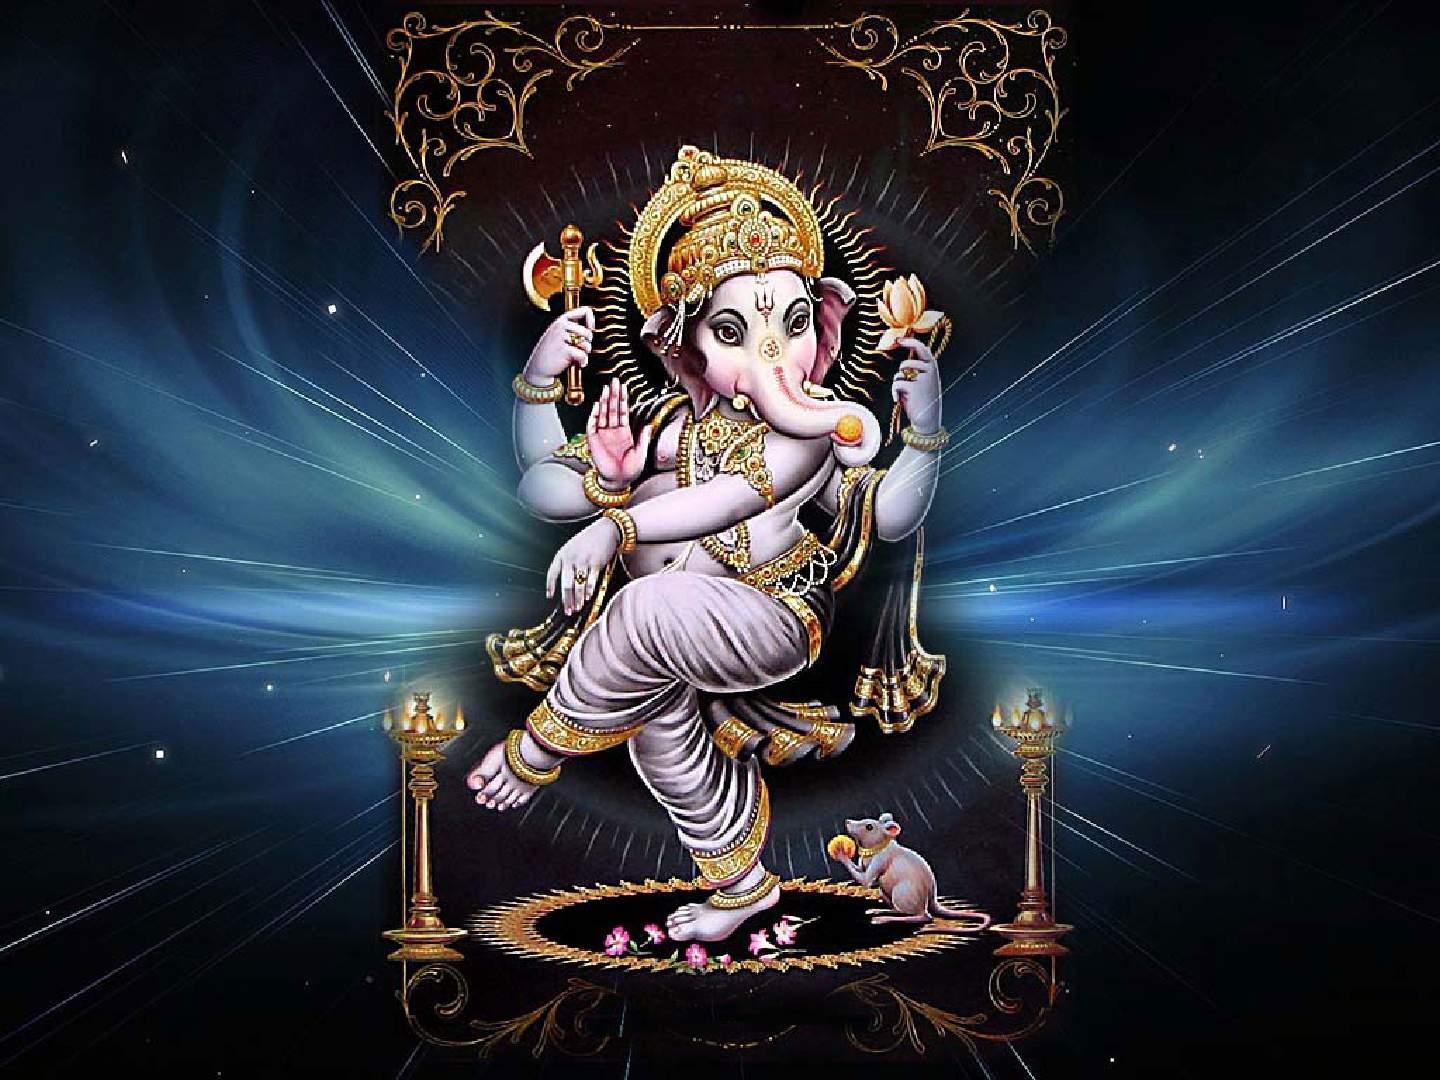 Dancing Ganesh Hindu Goddess theme free desktop background